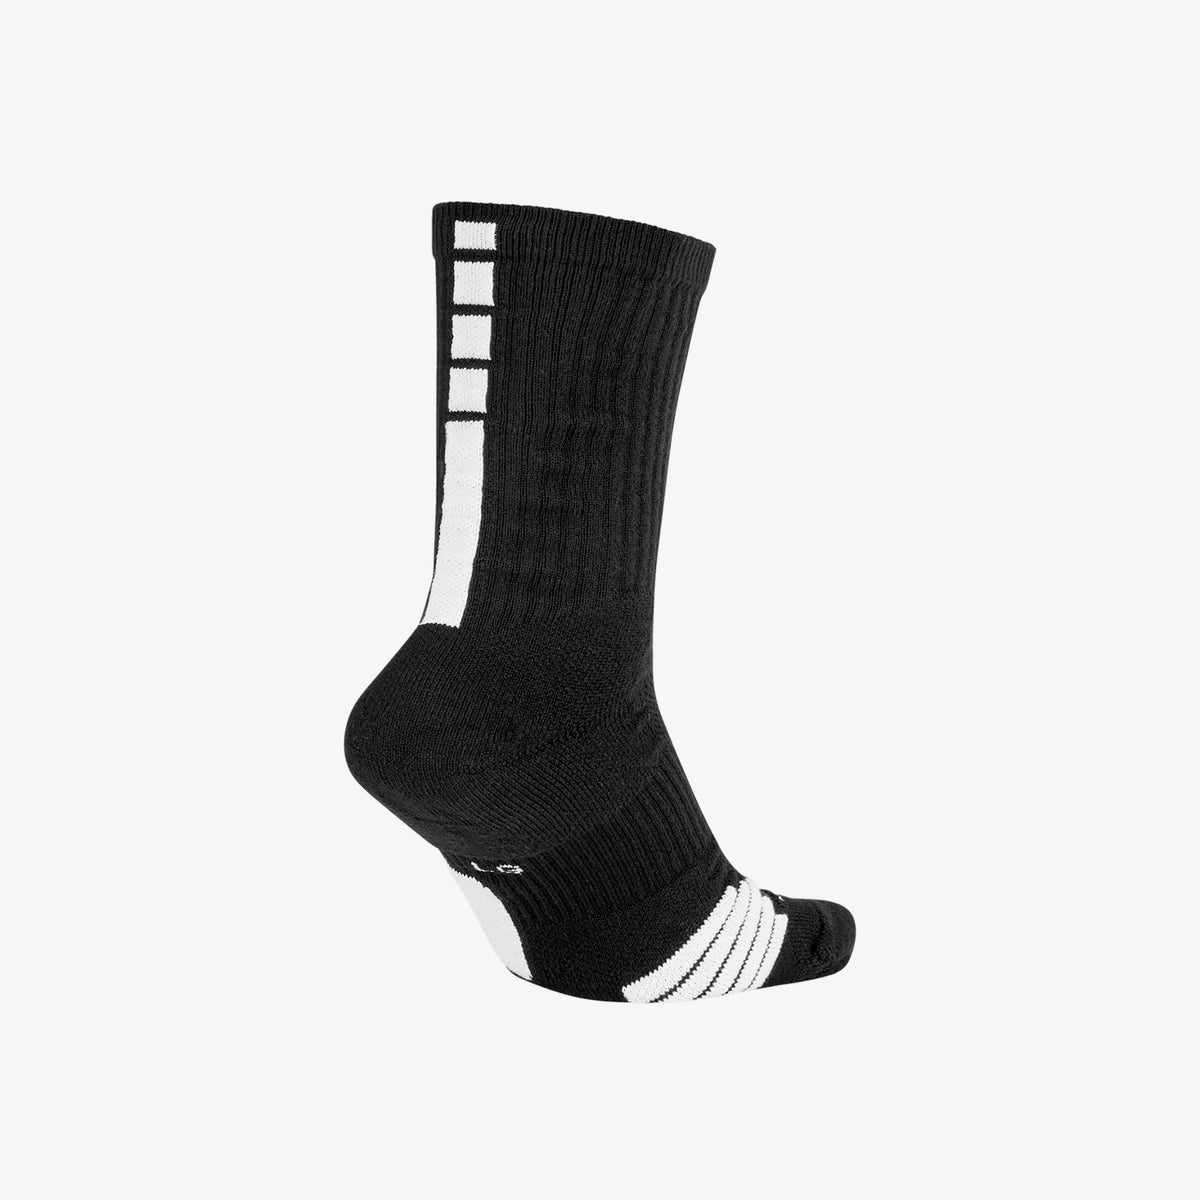 Elite Basketball Crew Socks - Black/White